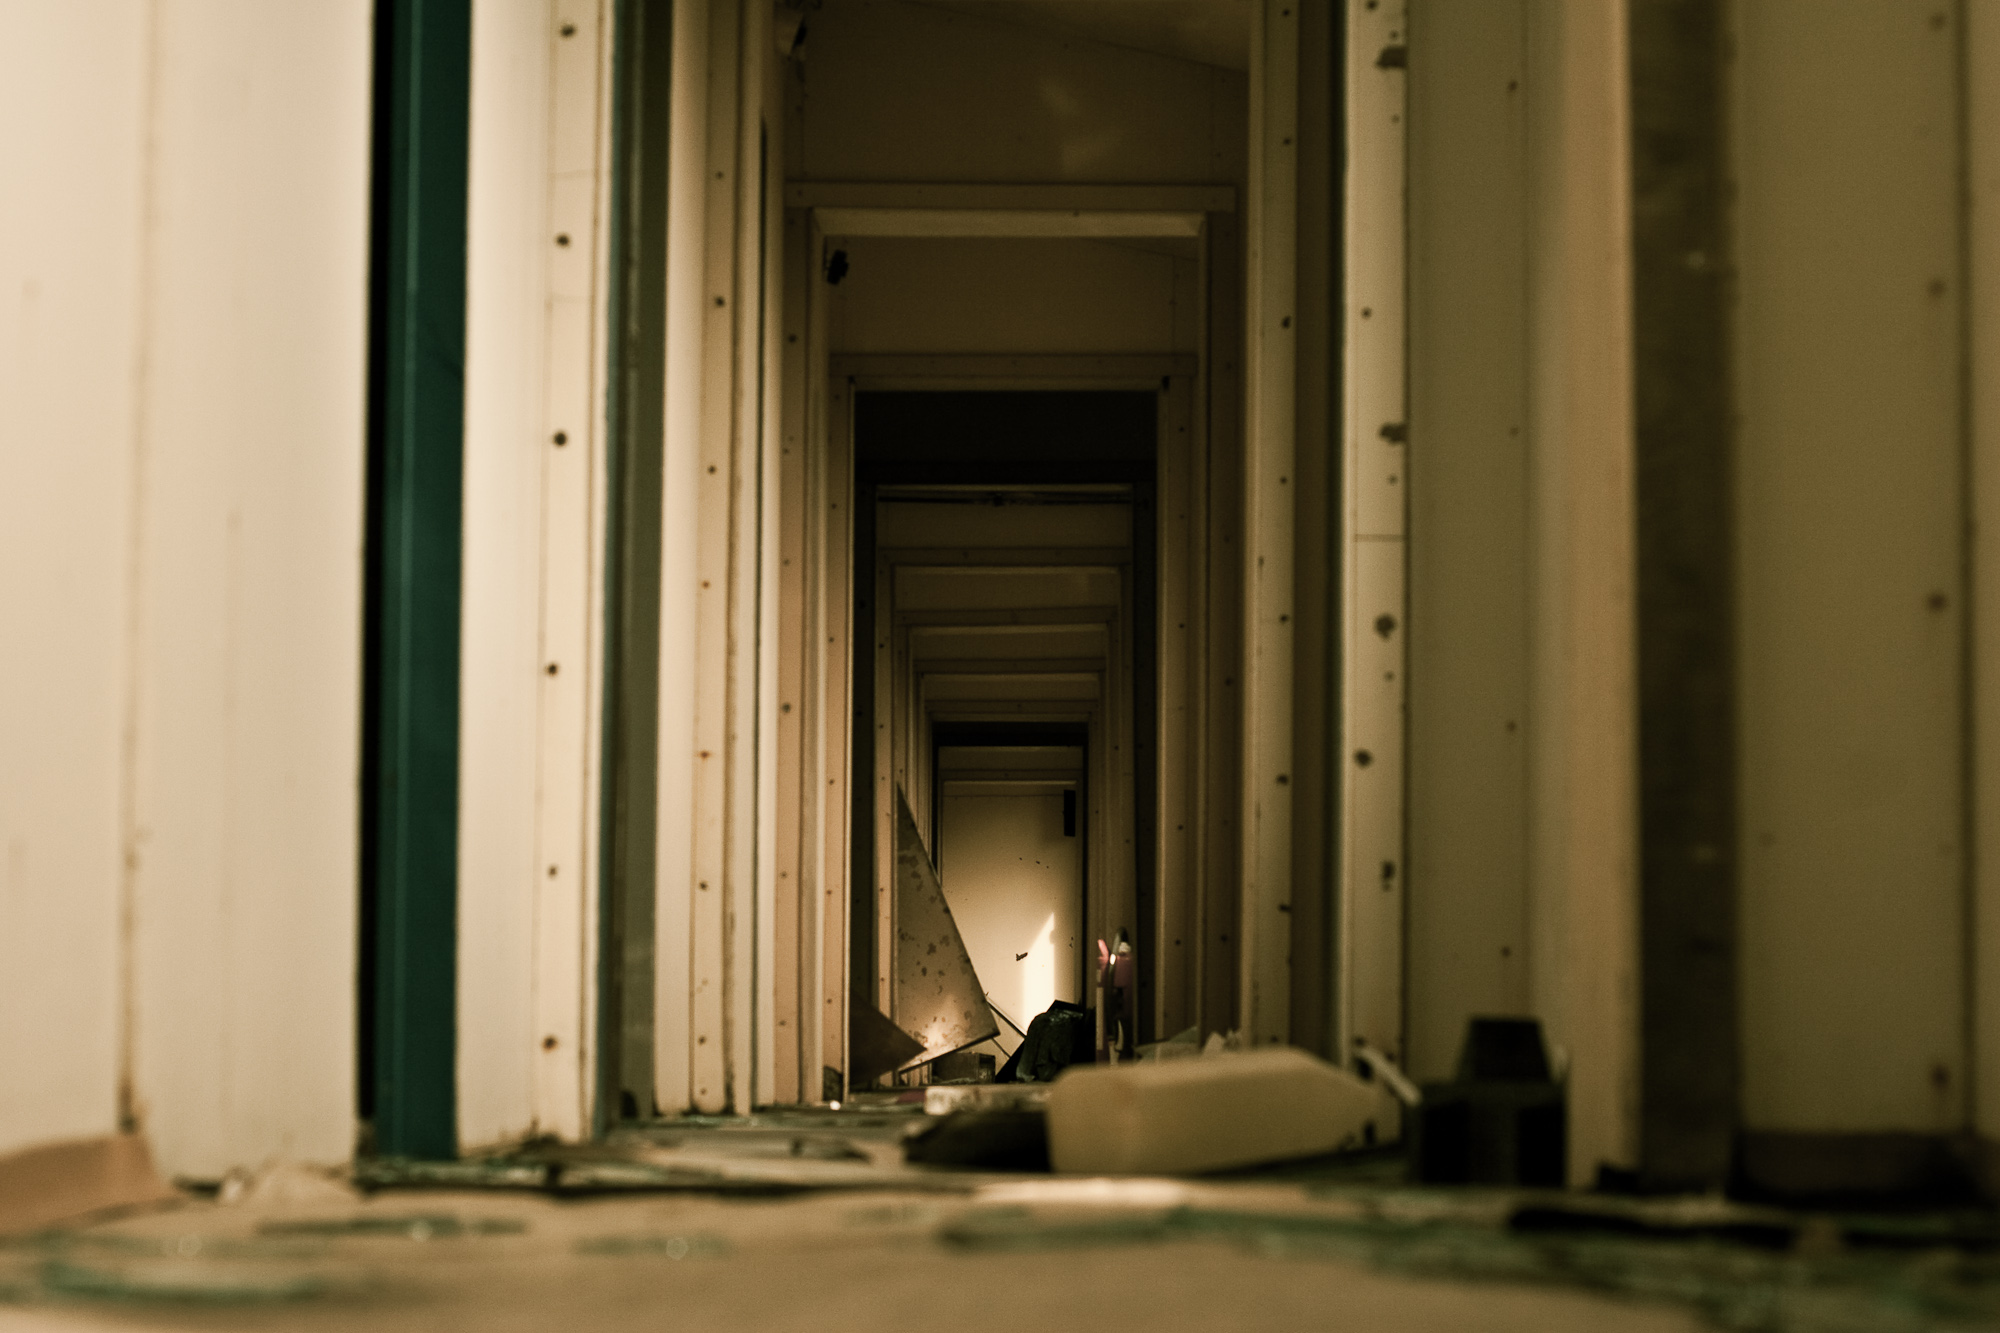 Abandoned hallway photo